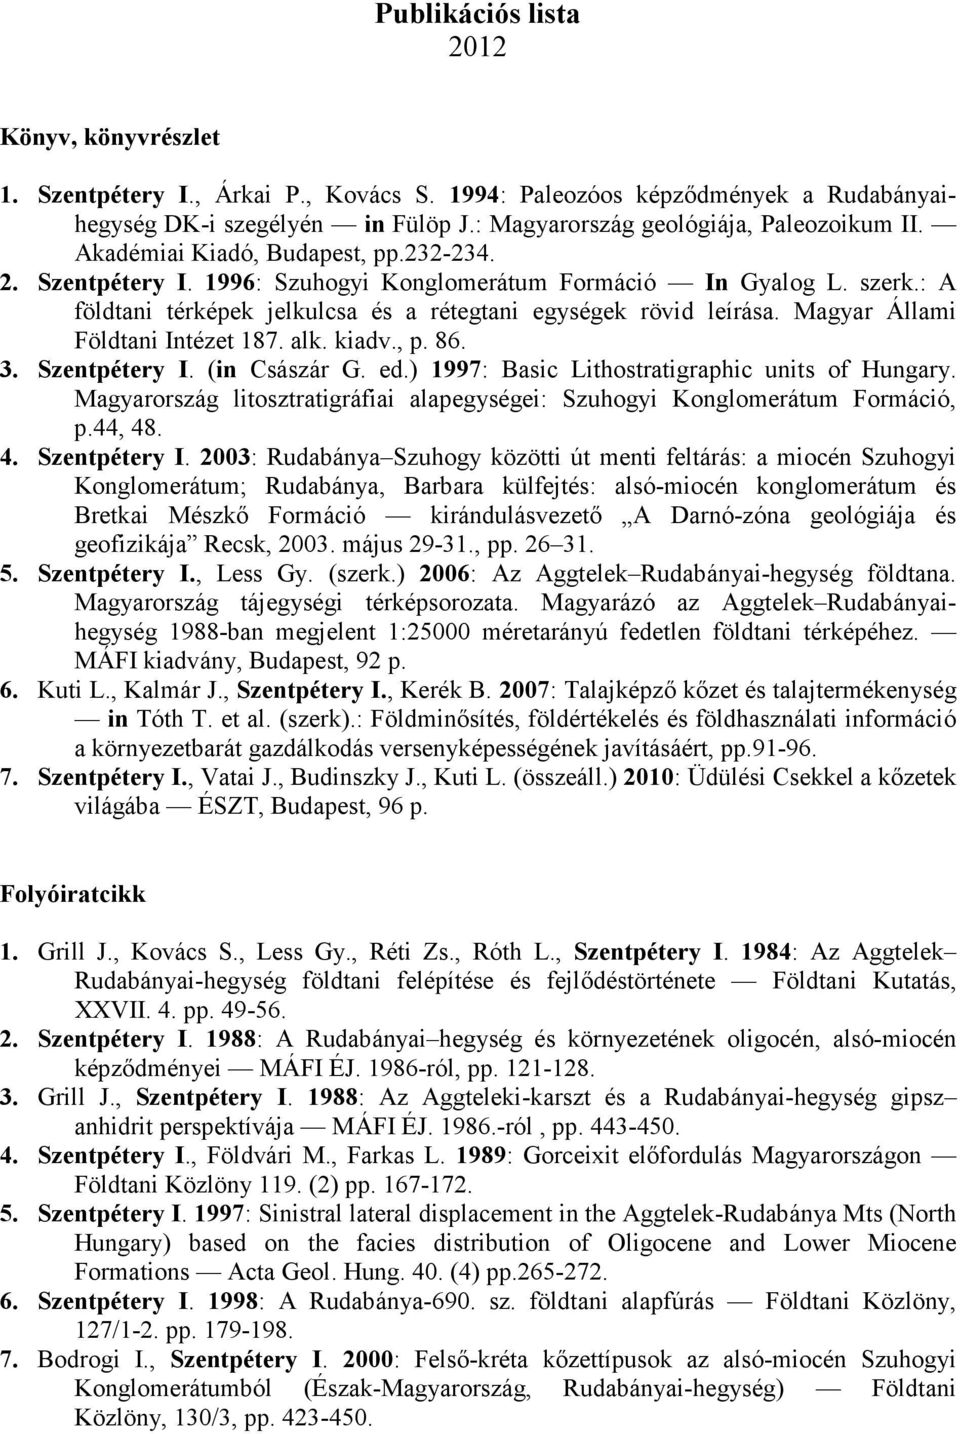 Magyar Állami Földtani Intézet 187. alk. kiadv., p. 86. 3. Szentpétery I. (in Császár G. ed.) 1997: Basic Lithostratigraphic units of Hungary.